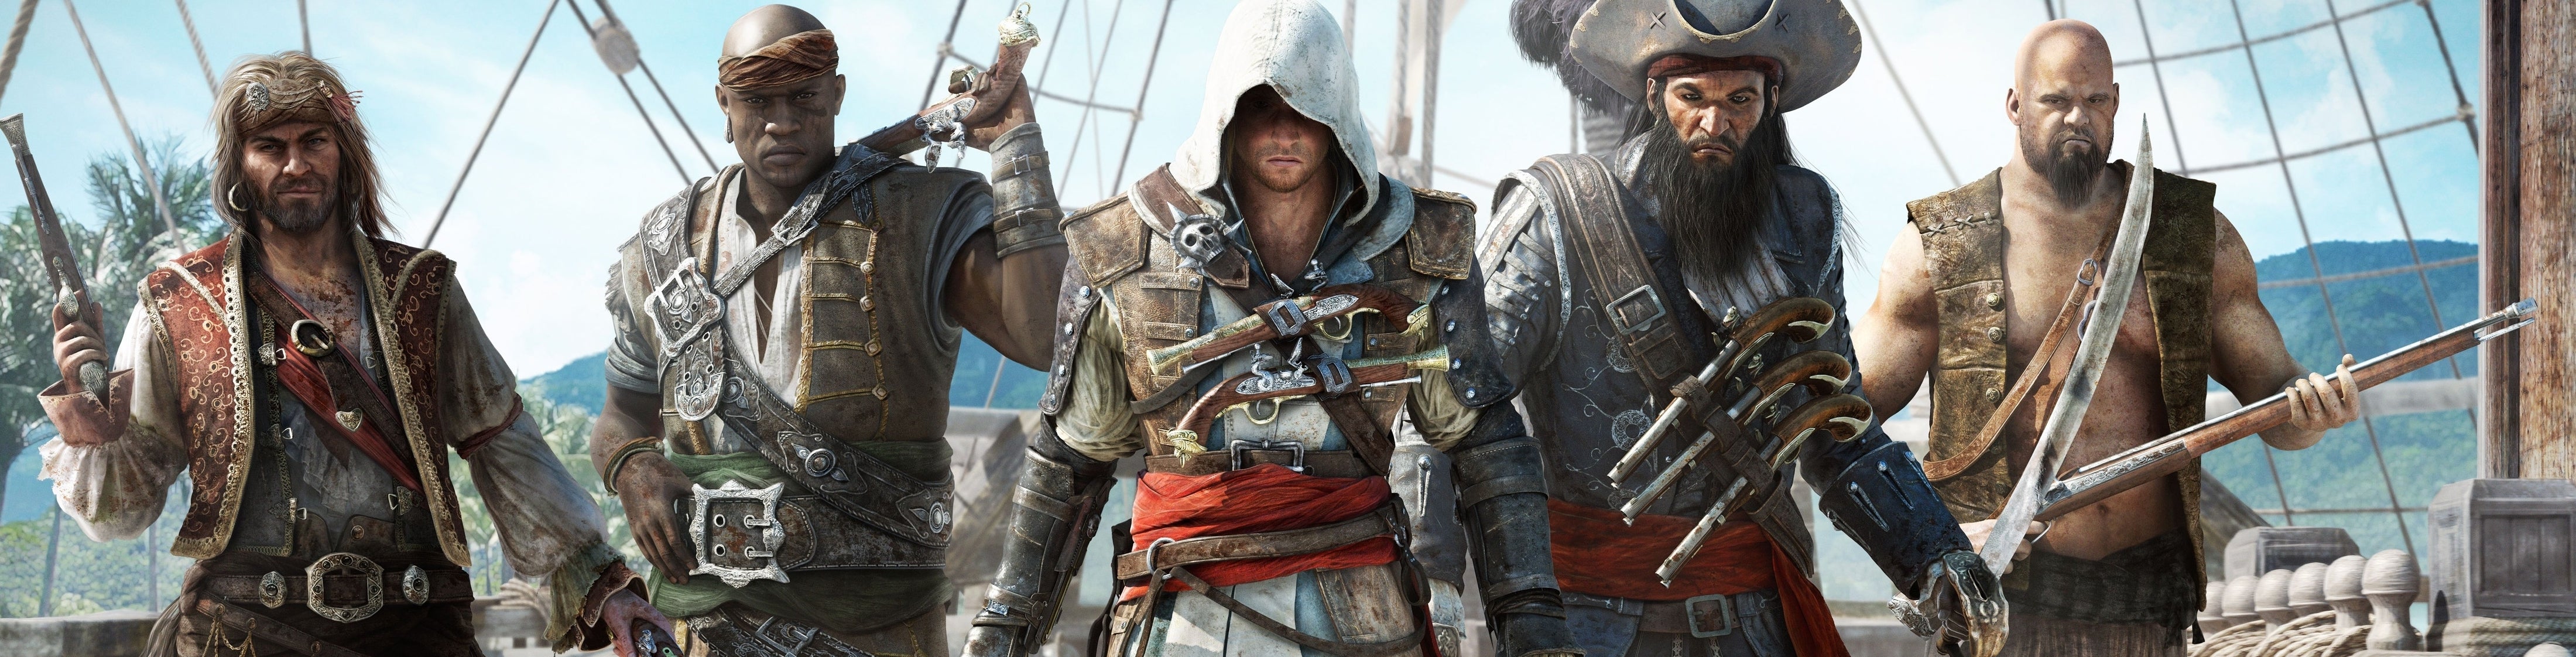 Immagine di Assassin's Creed IV: Black Flag - prova comparativa